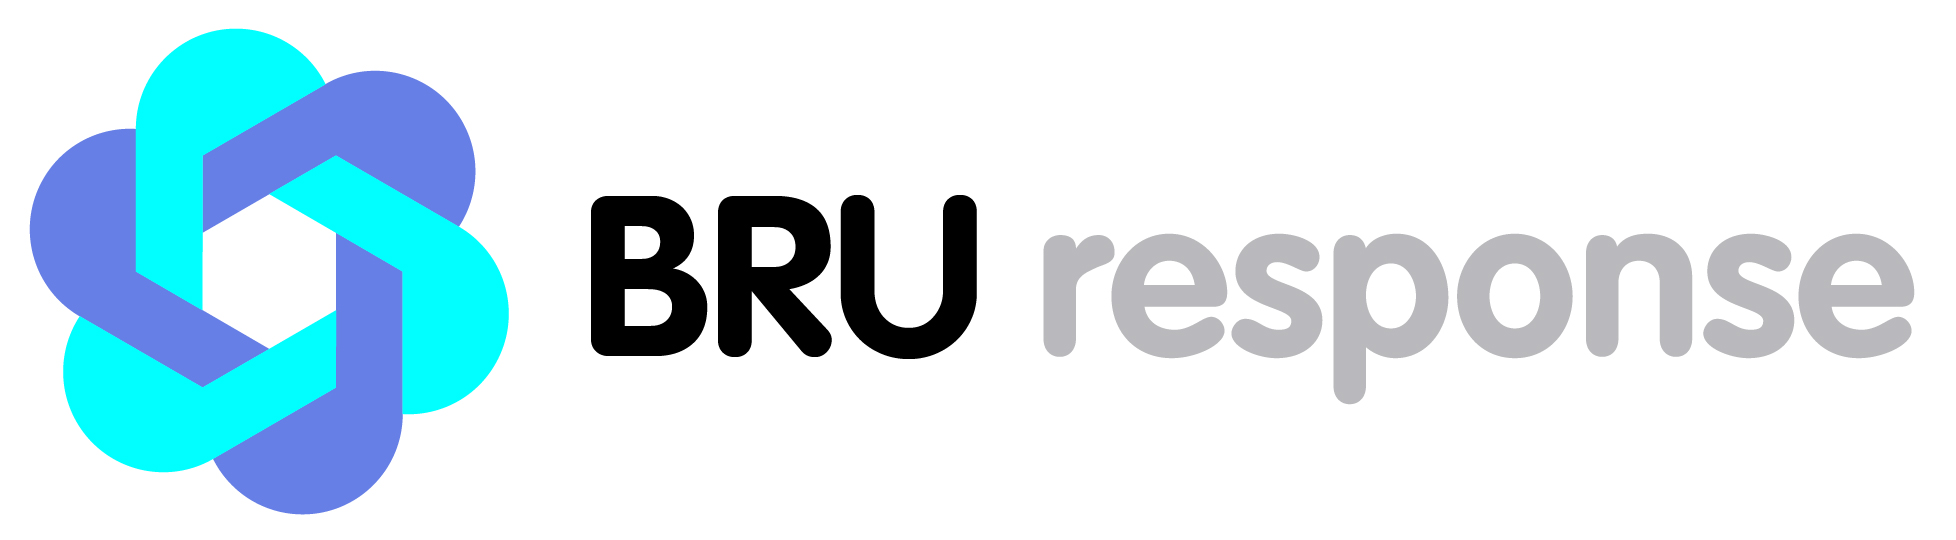 BRU response : un label pour intégrer les Bruxellois dans la gestion de crise 